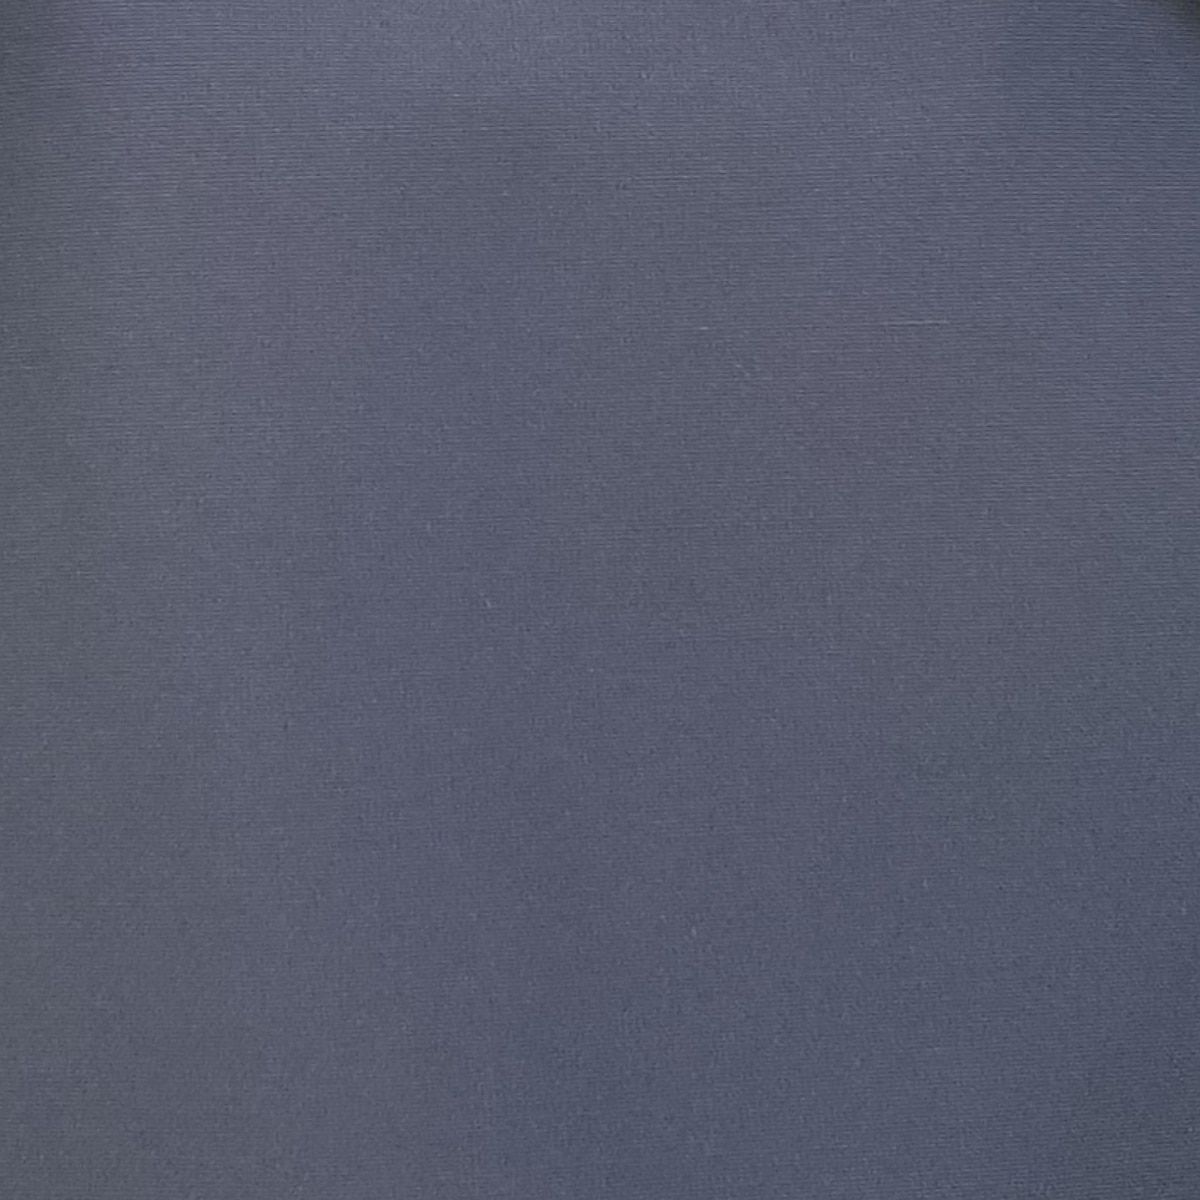 PRADA(プラダ) コート サイズ38 S レディース美品 - ネイビー 七分袖 